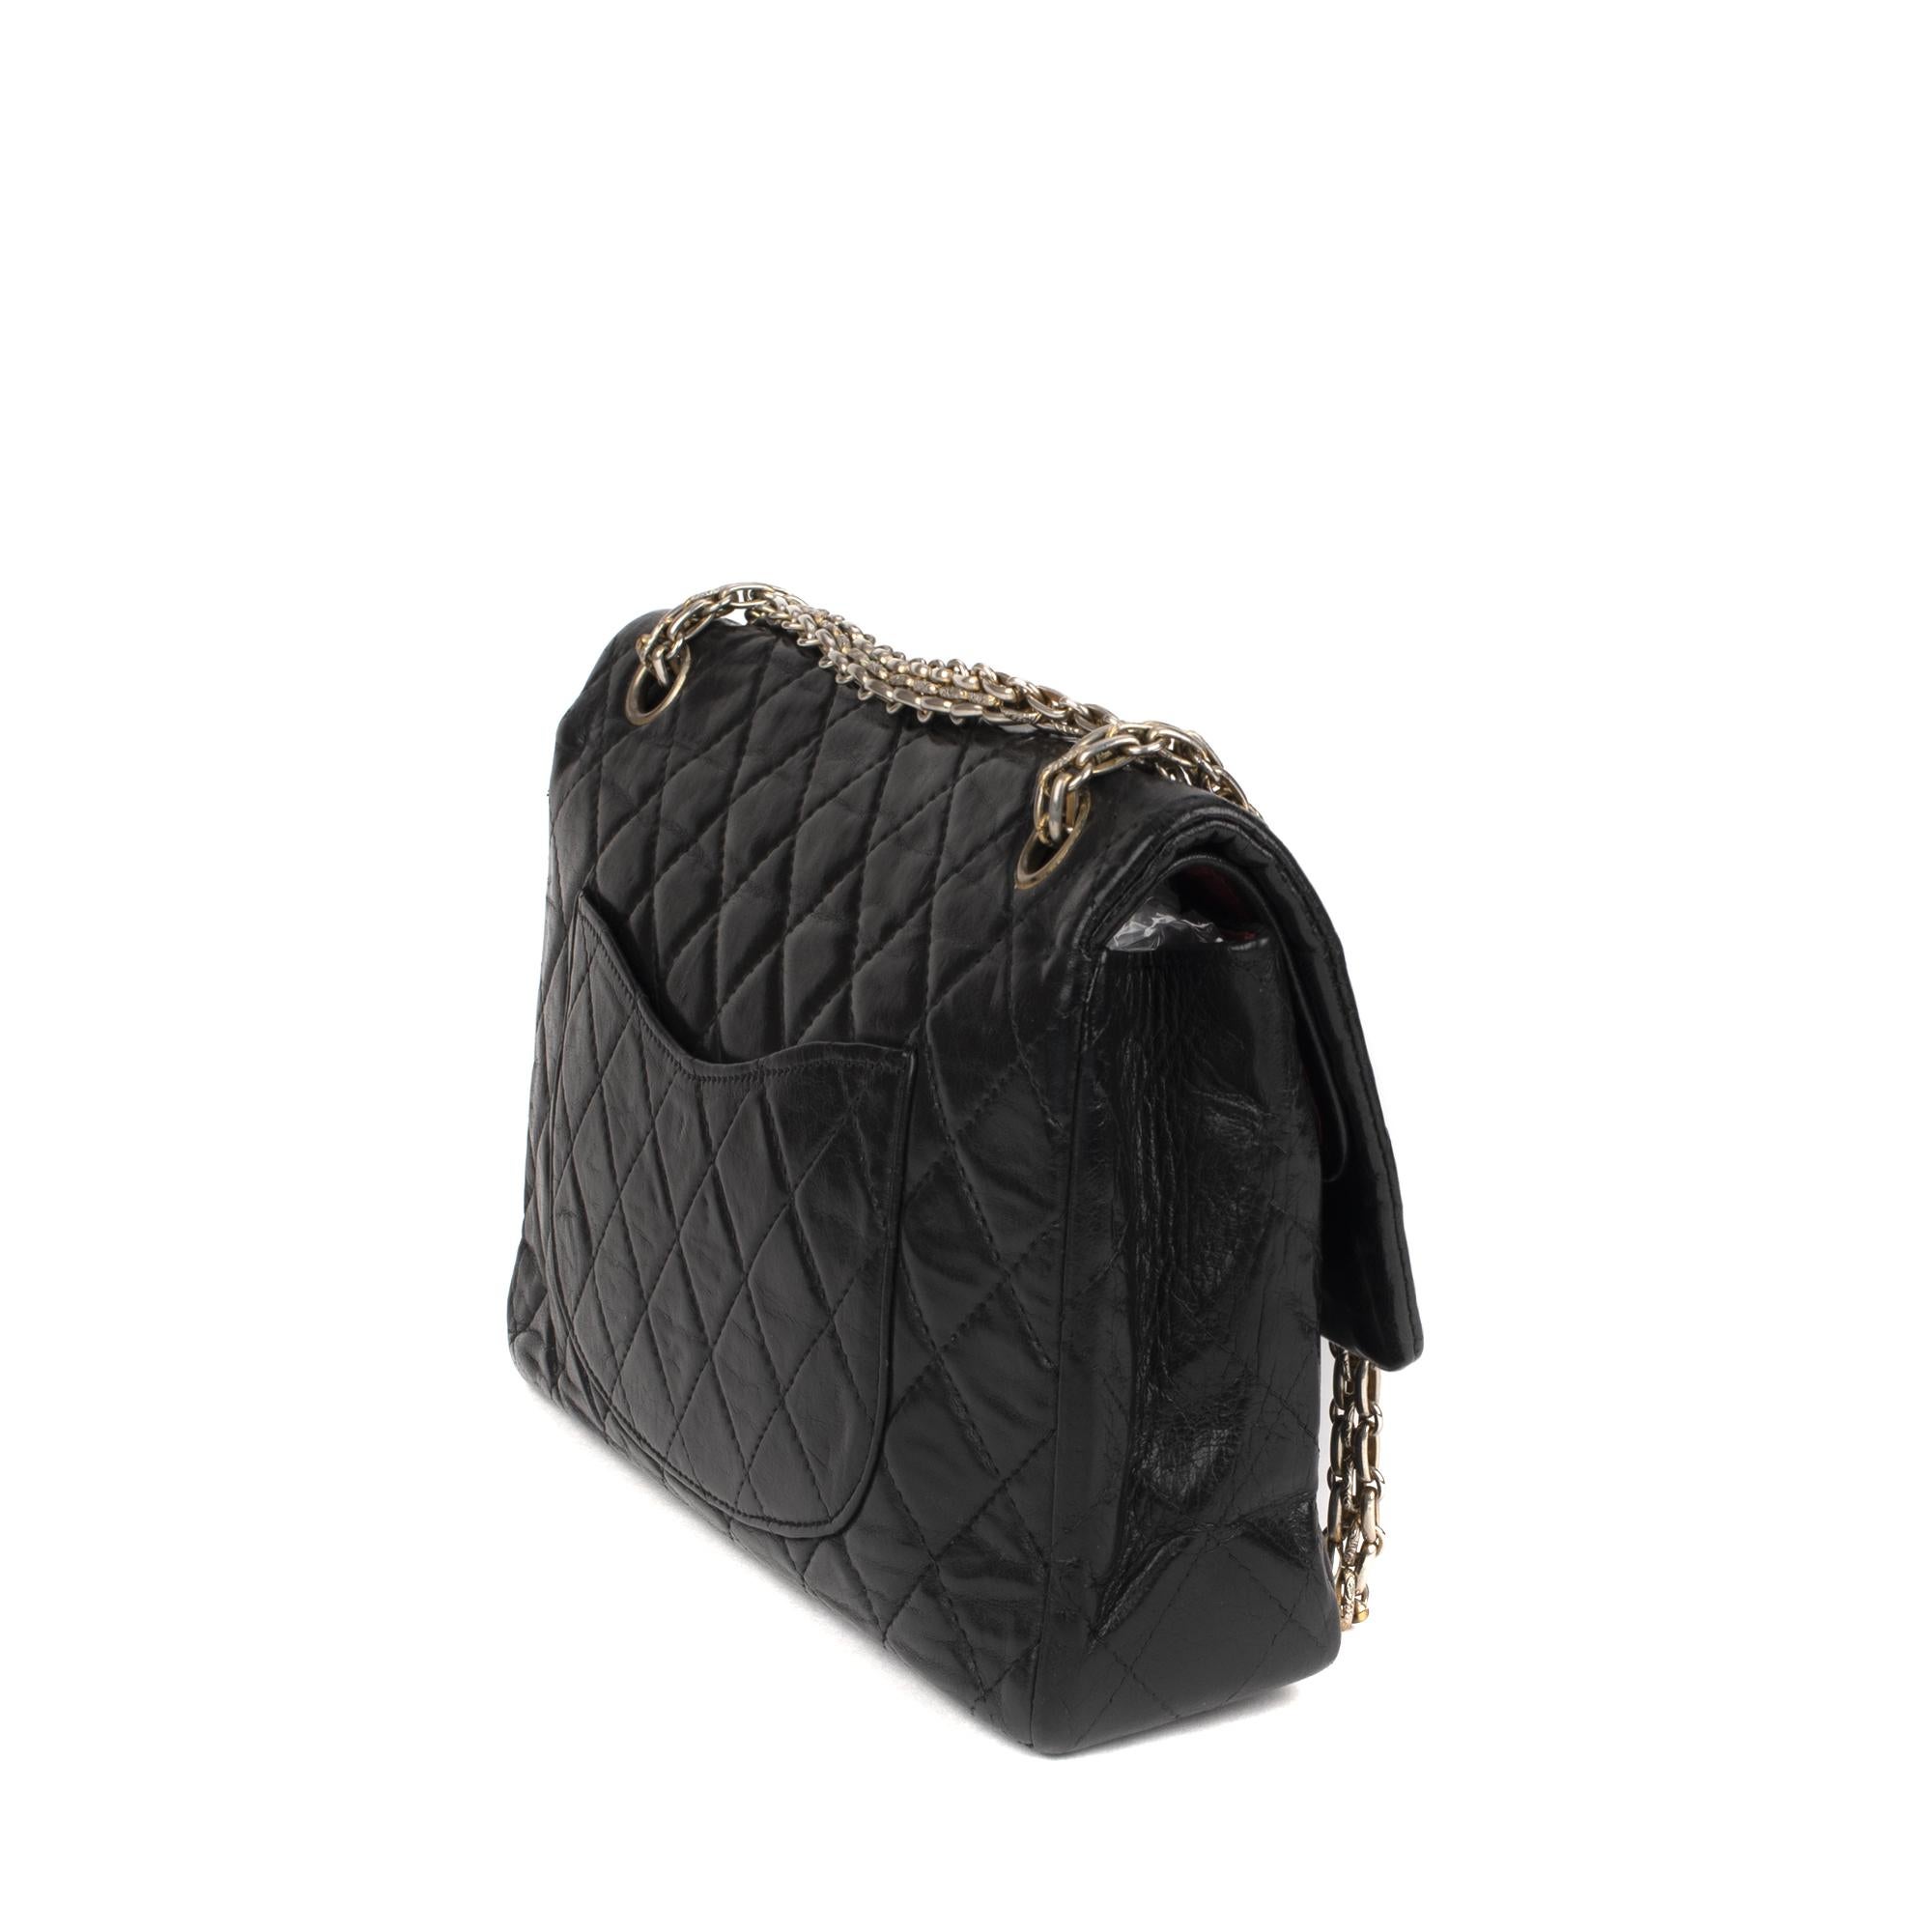 Women's Handbag Chanel 2.55 in Black lambskin Leather !